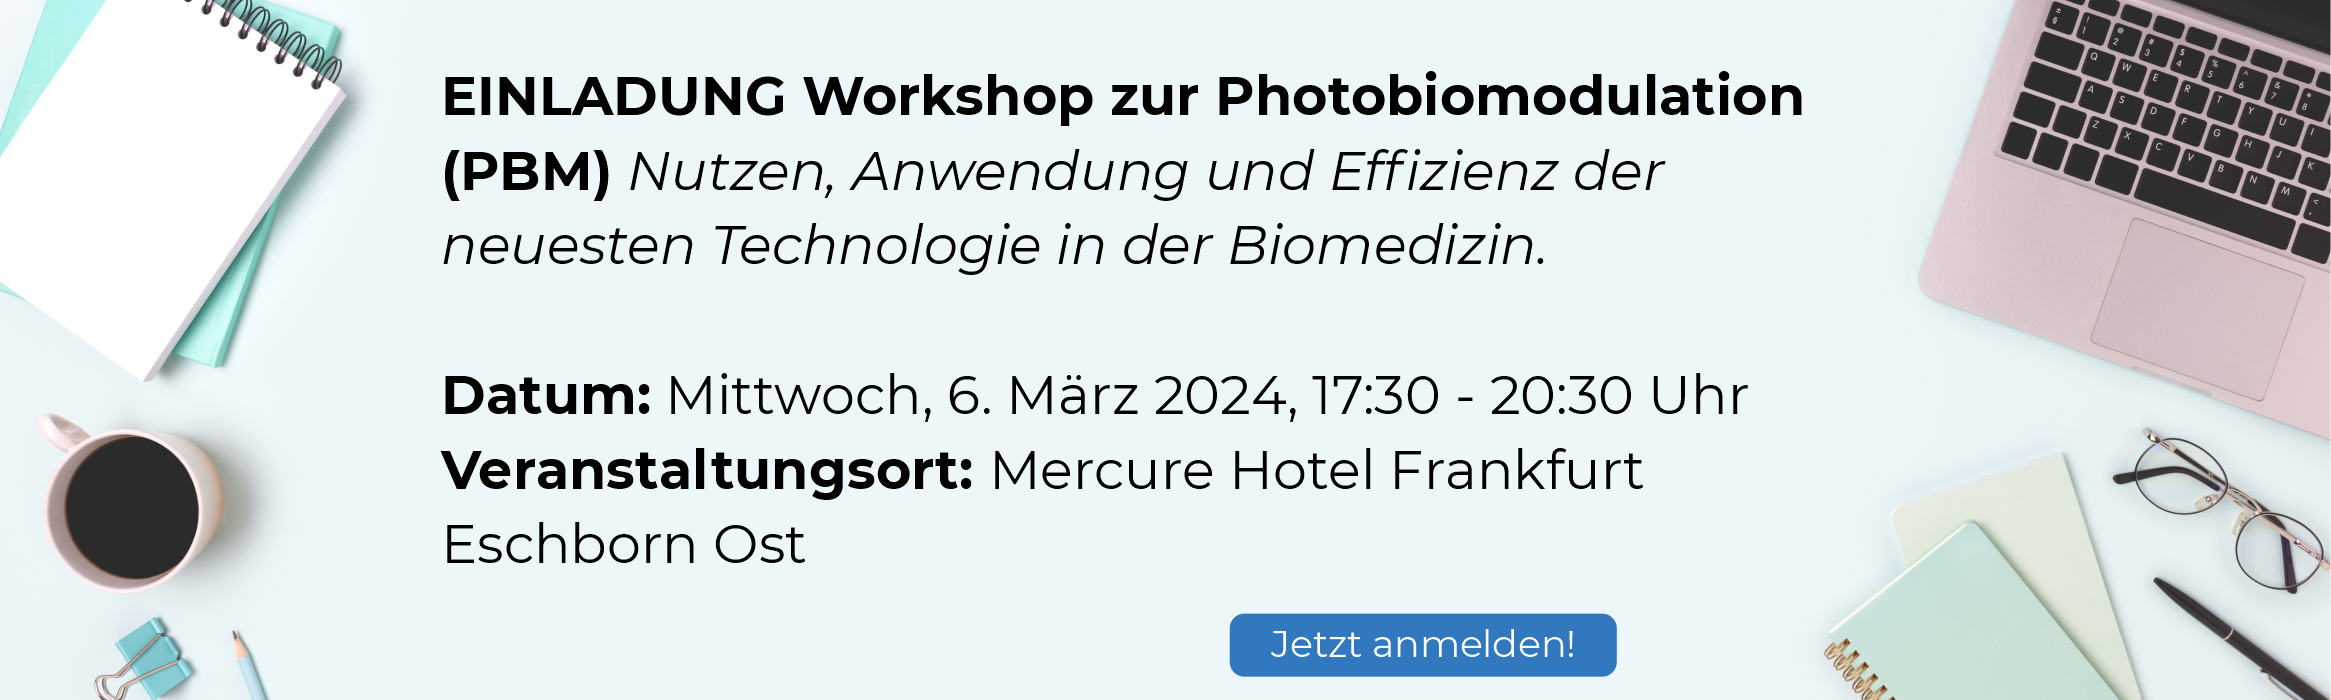 PBM-Workshop in Frankfurt, 06. März 2024